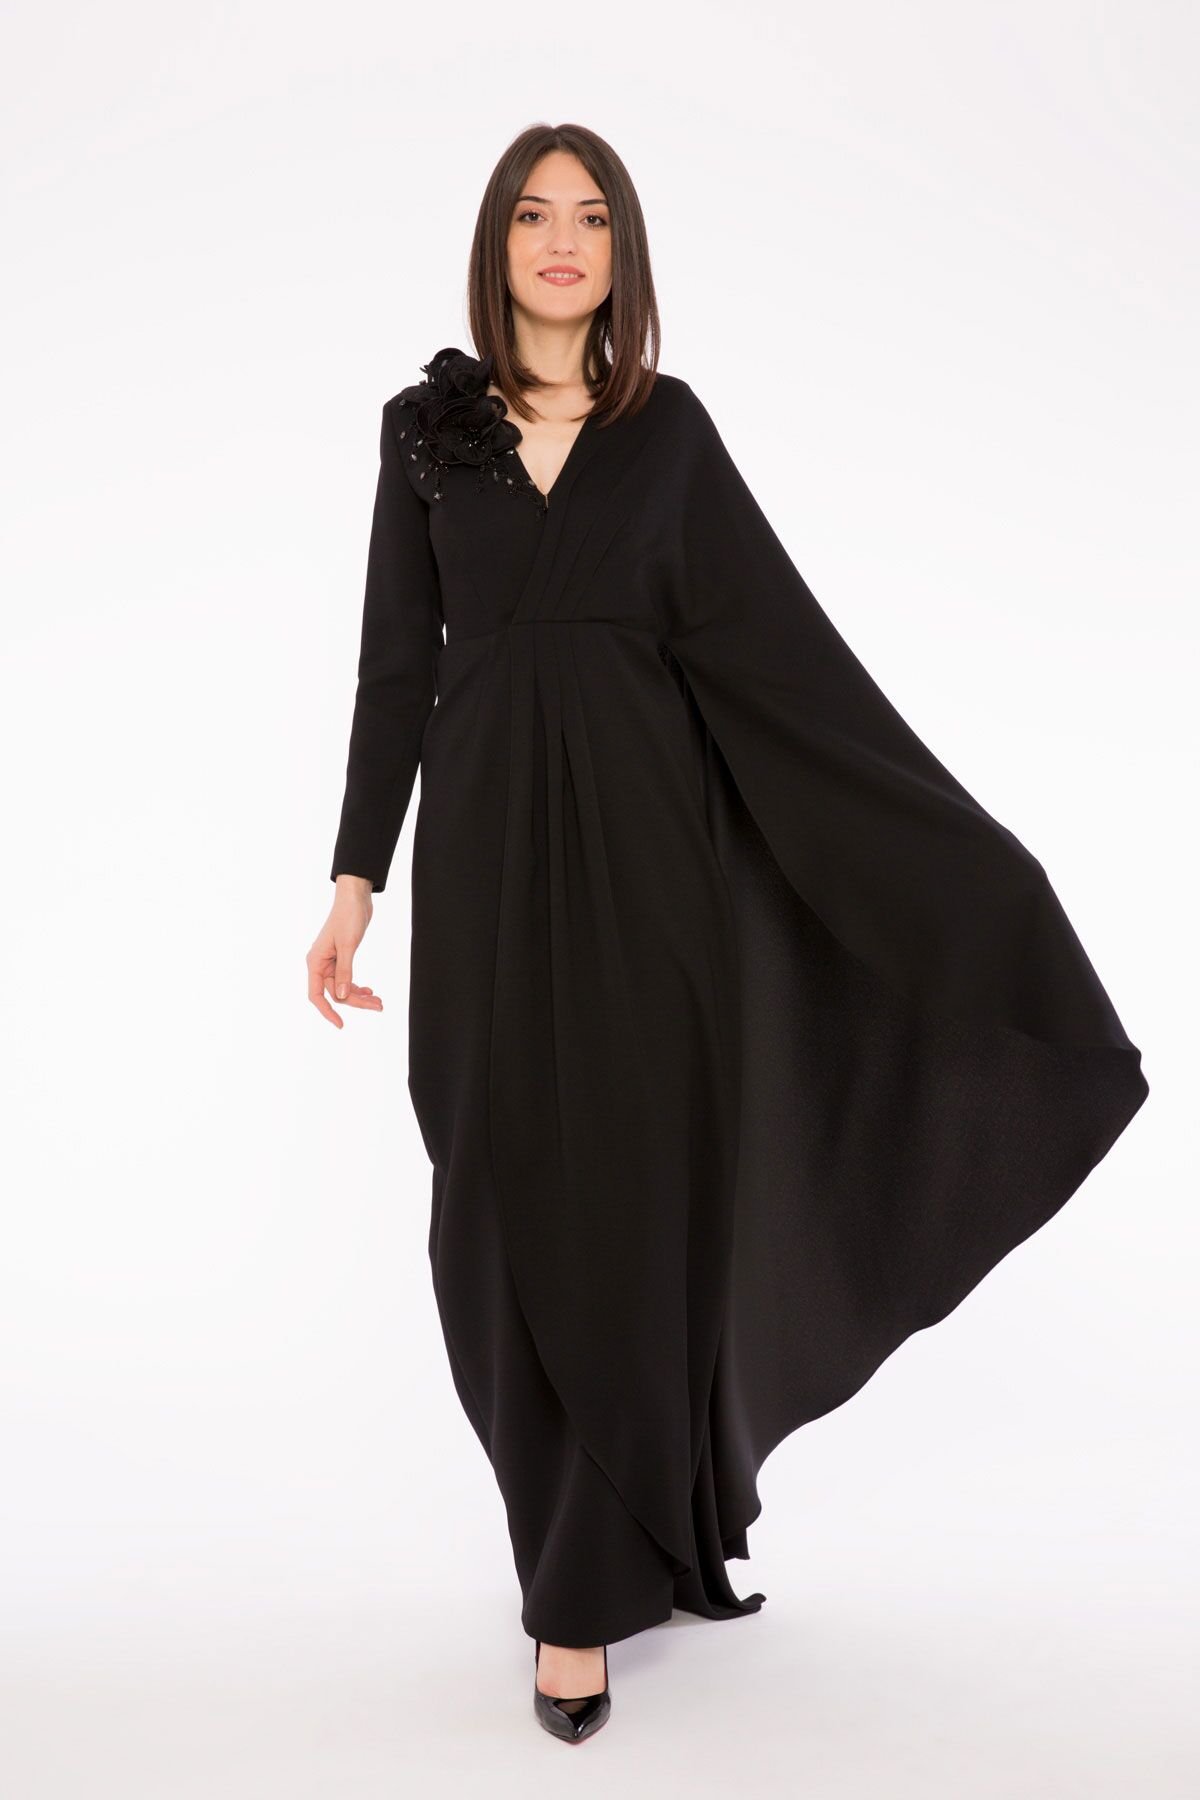 3 Boyutlu Nakış Detaylı Asimetrik Pelerinli Kollu Uzun Gece Elbisesi